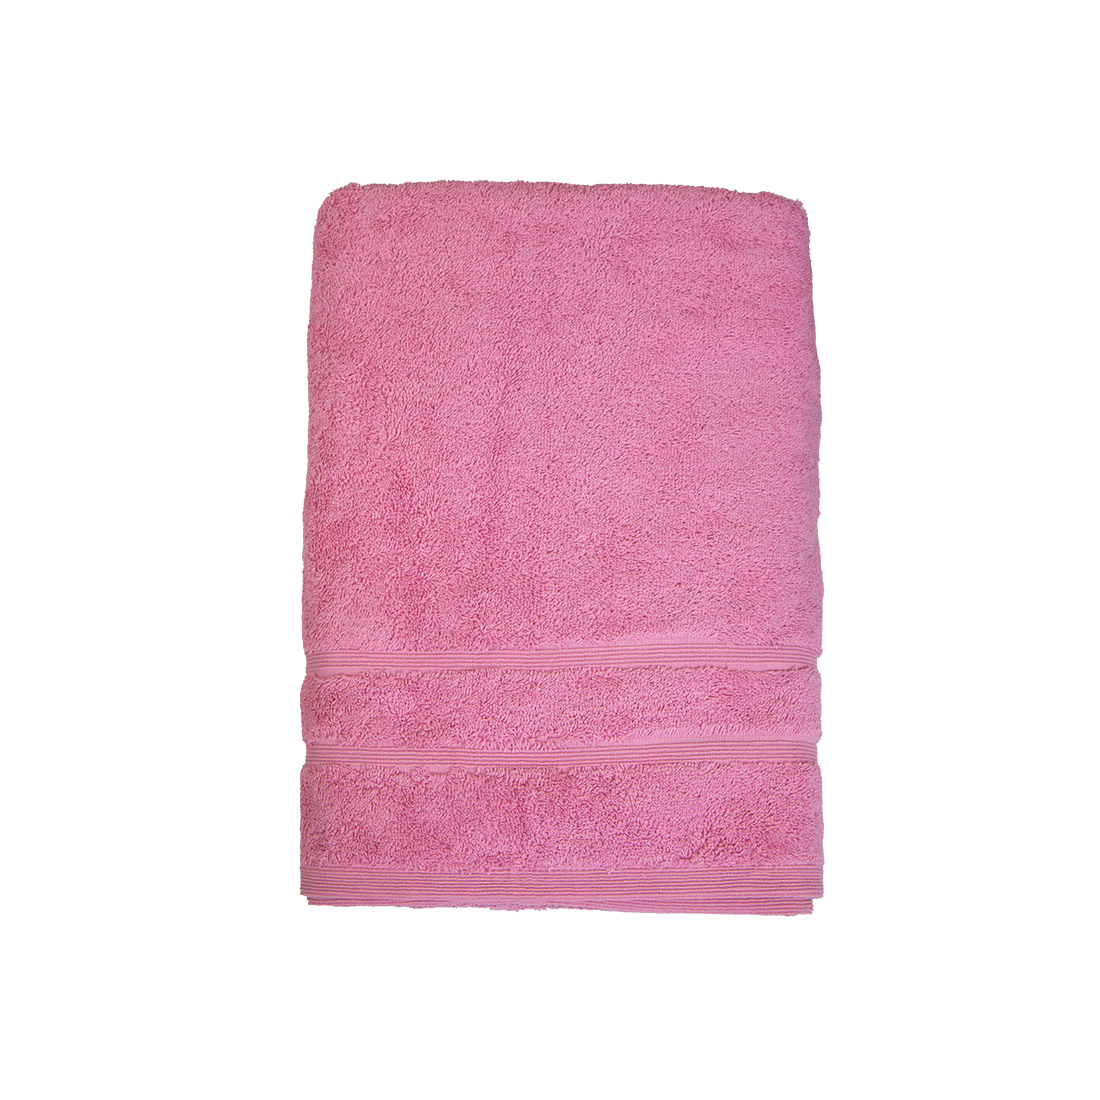 Bio Baumwoll Dusch- und Badetuch, in den Größen 70 mal 140 cm und 100 mal 140 cm in der Farbe Rosa-Pink